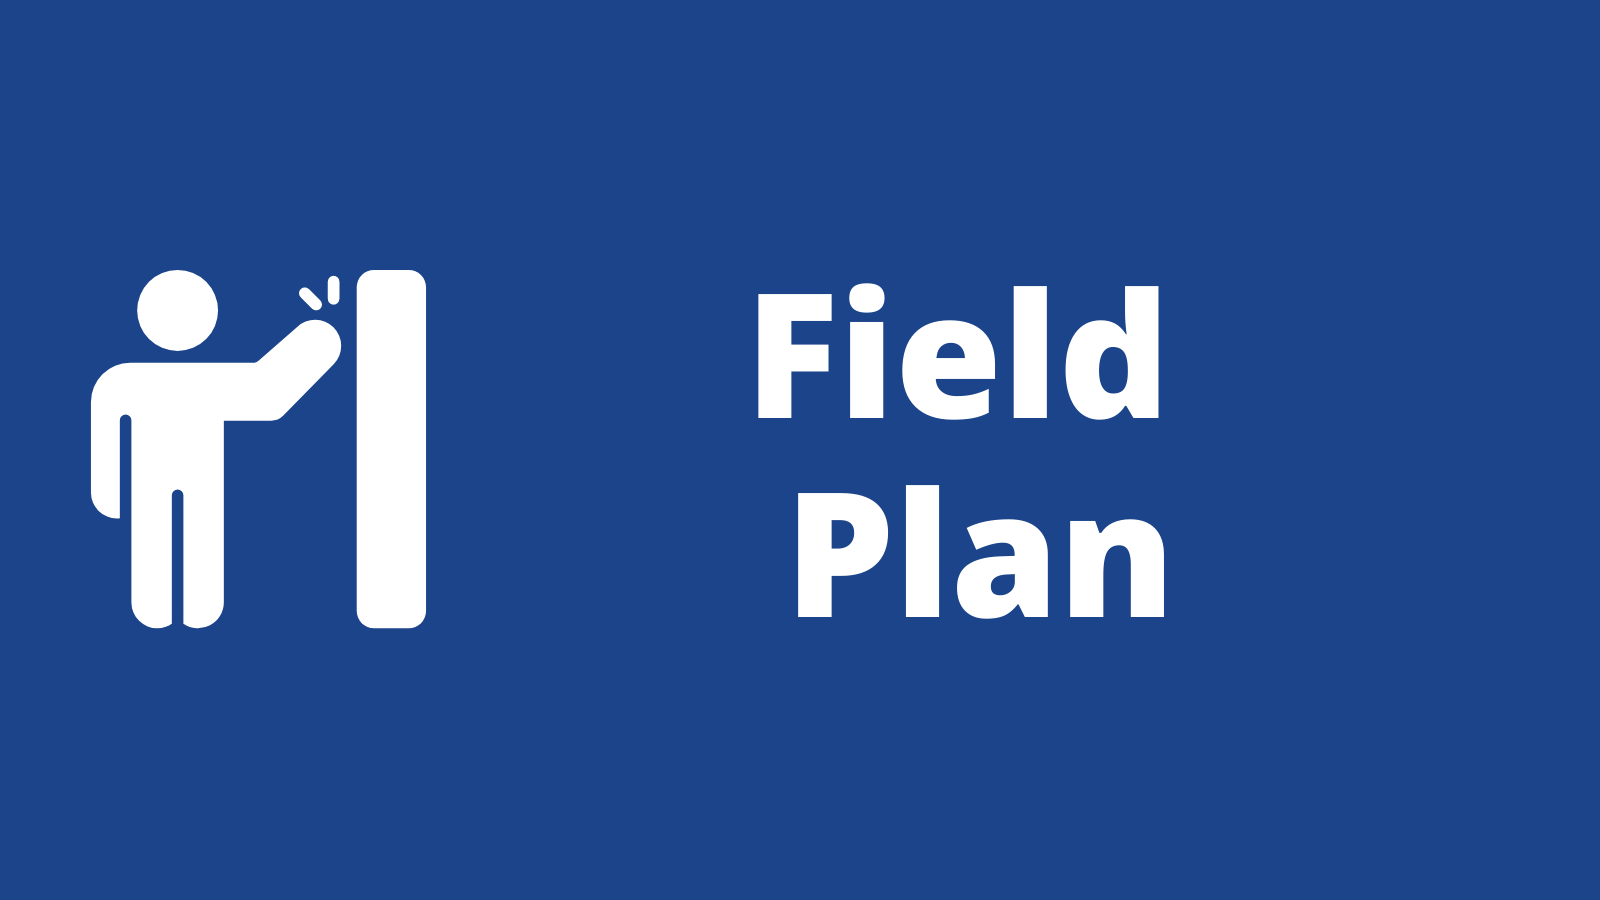 Field Plan